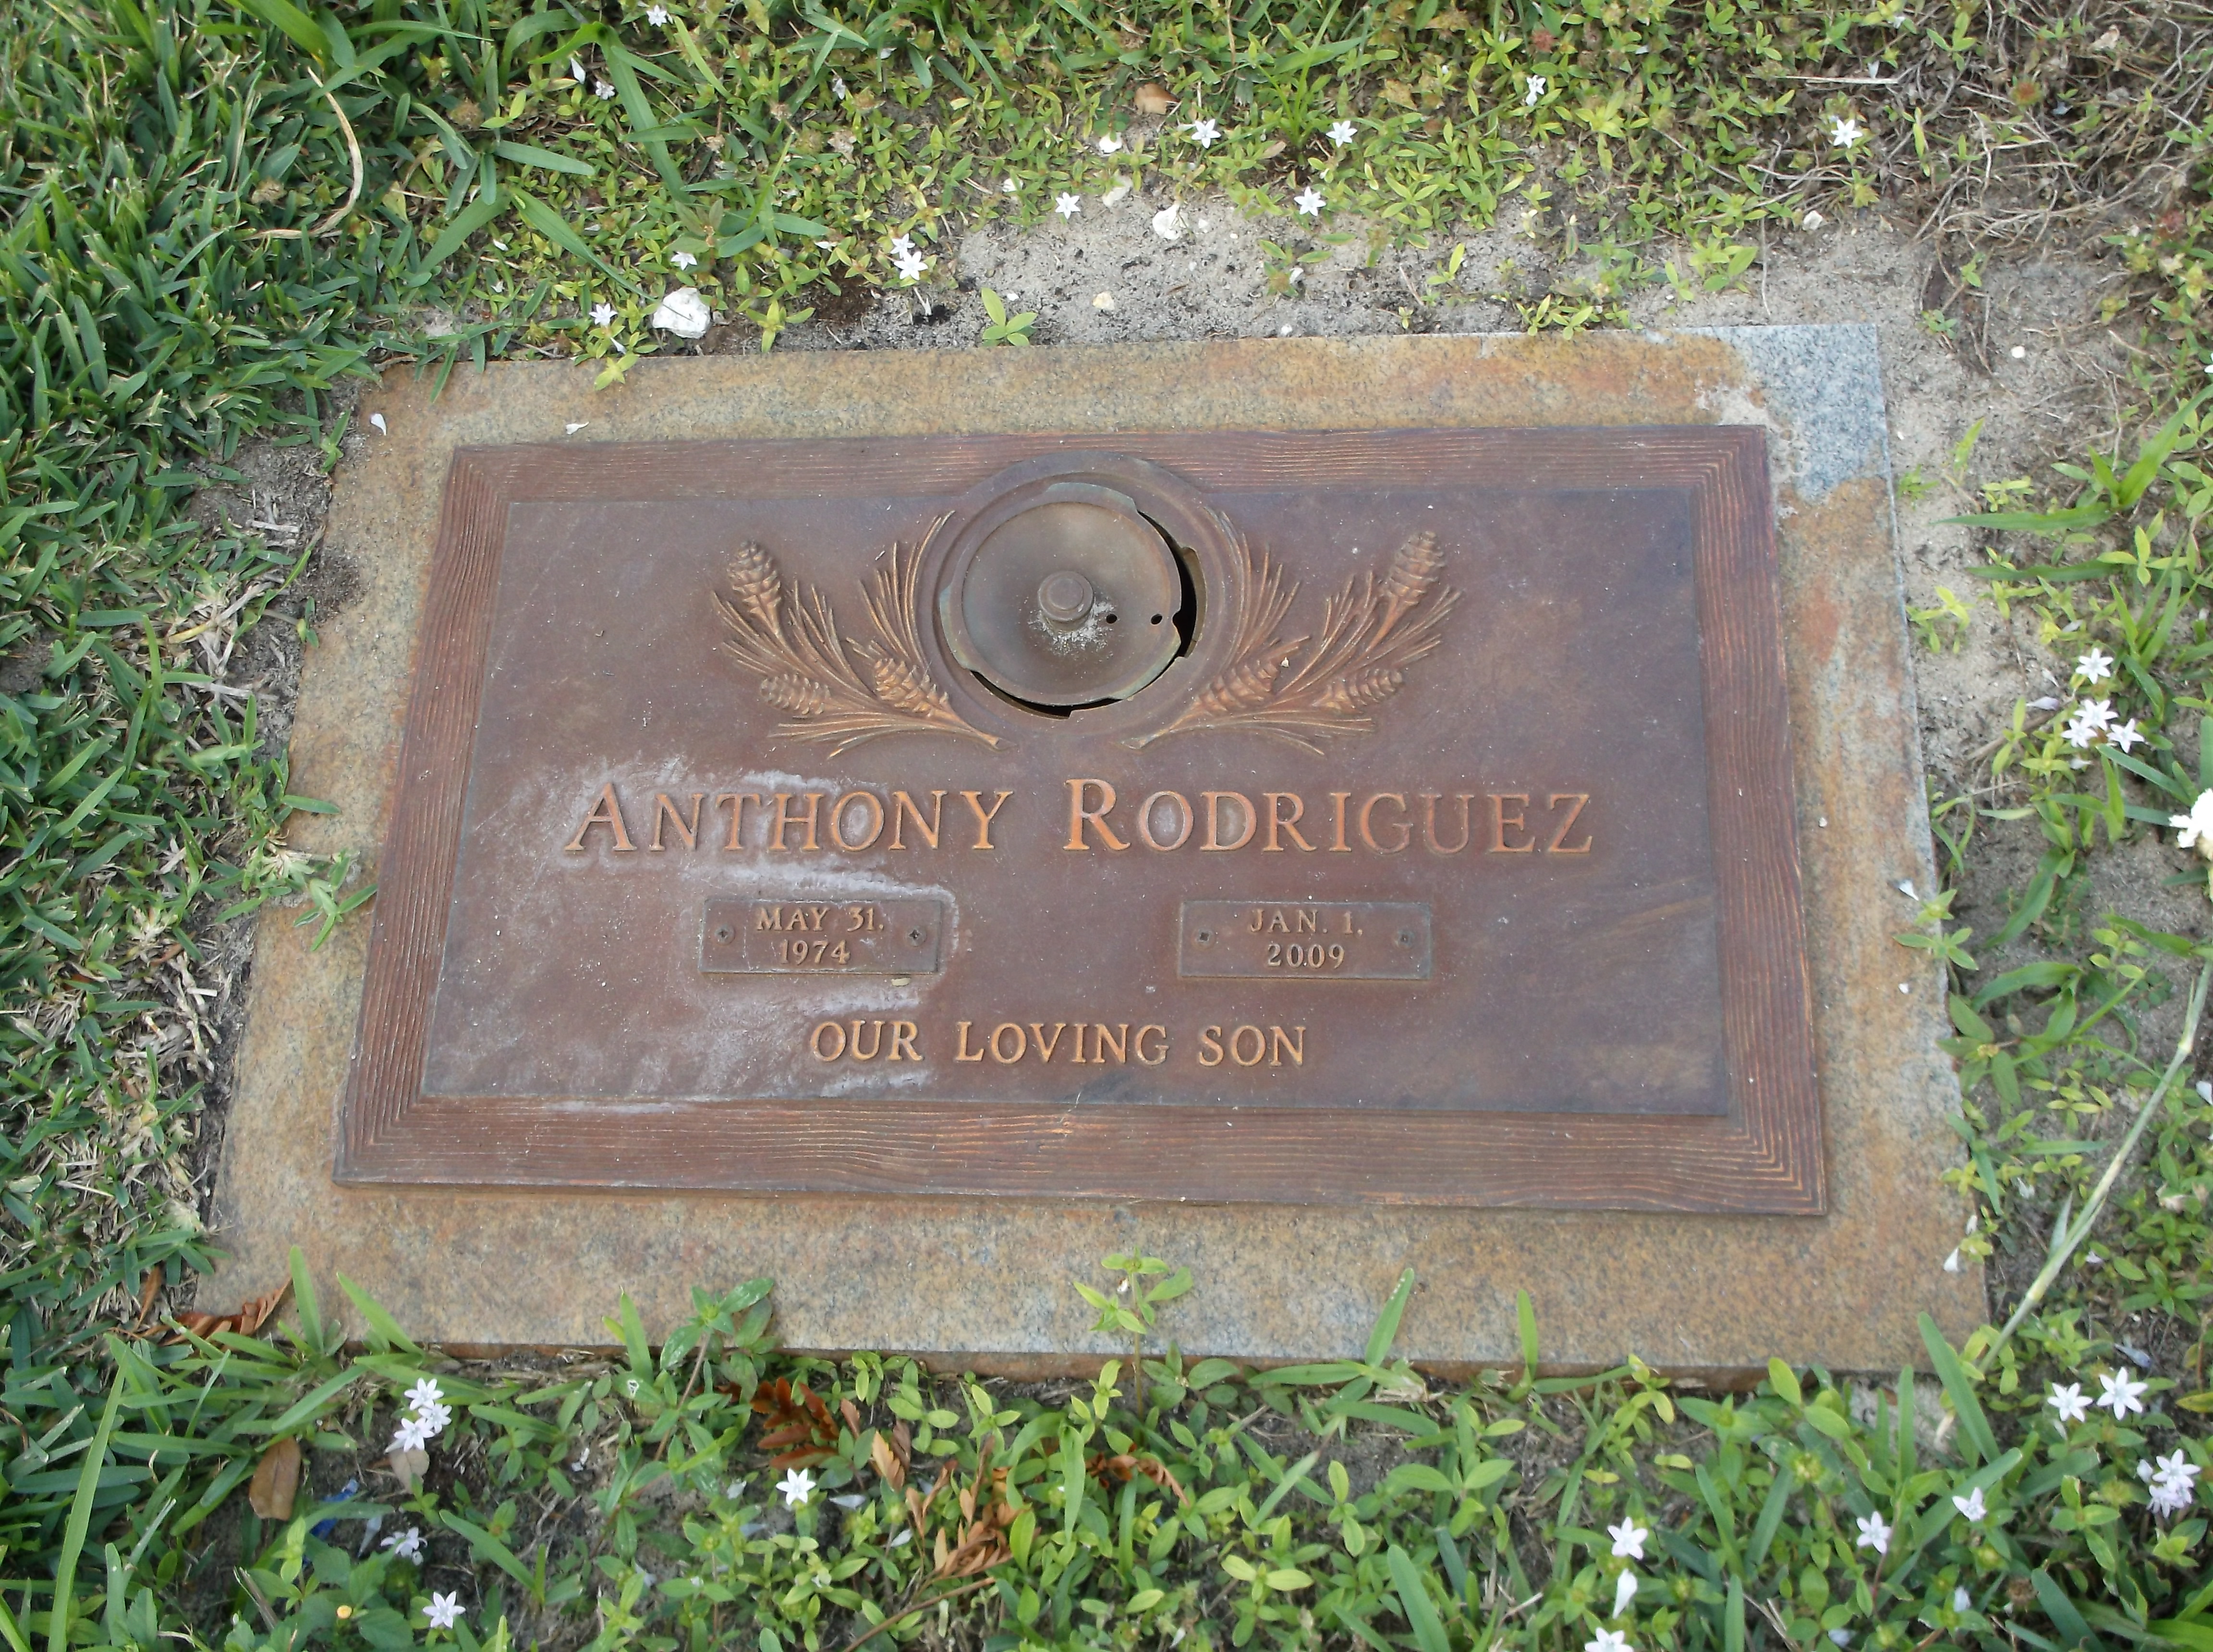 Anthony Rodriguez